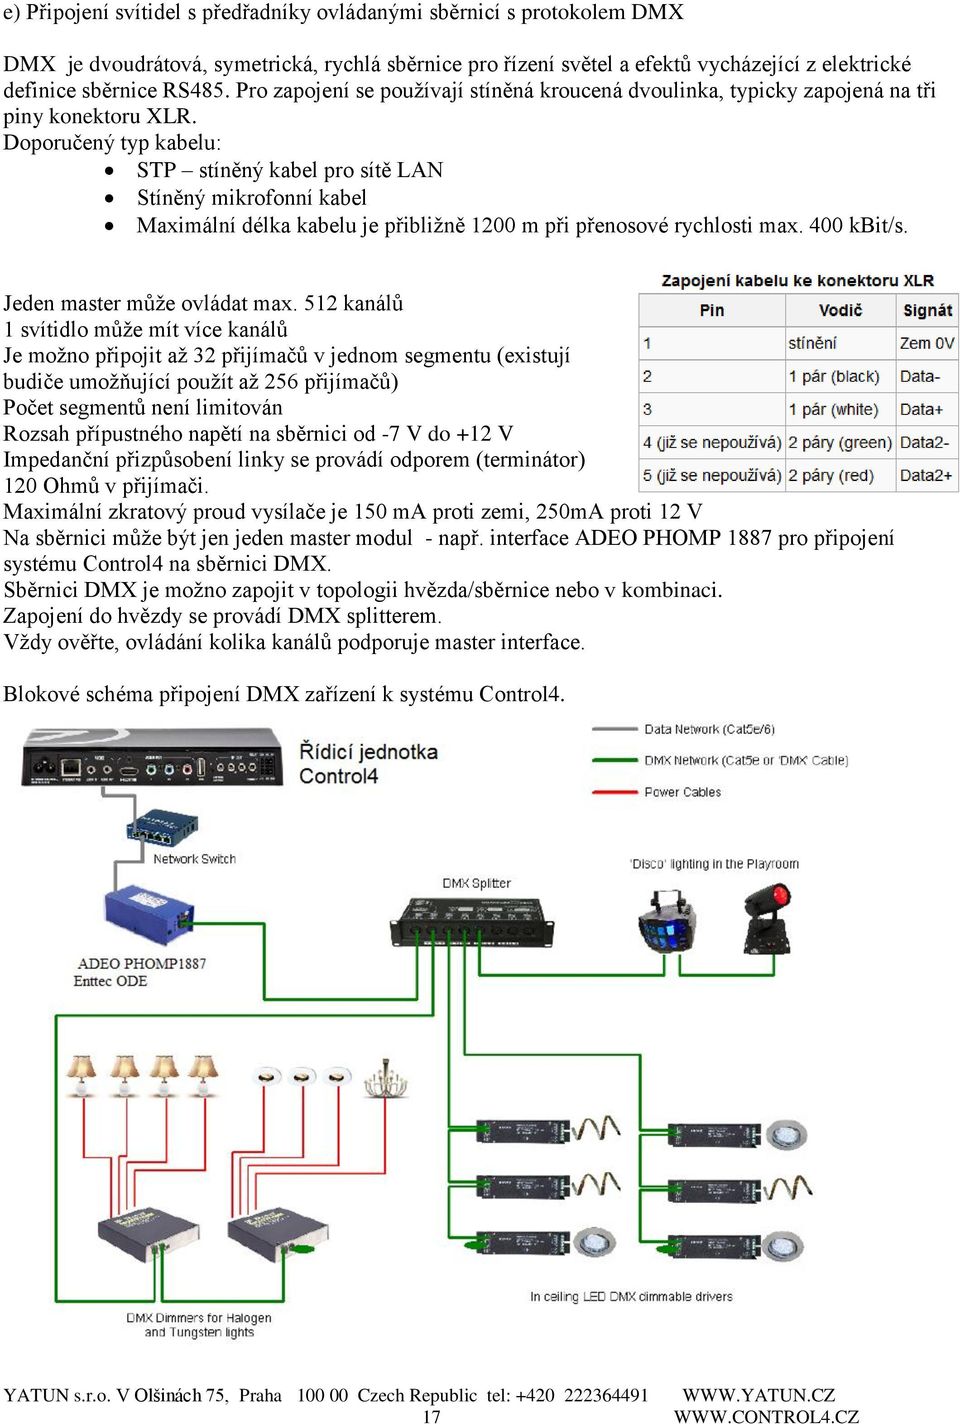 Doporučený typ kabelu: STP stíněný kabel pro sítě LAN Stíněný mikrofonní kabel Maximální délka kabelu je přibližně 1200 m při přenosové rychlosti max. 400 kbit/s. Jeden master může ovládat max.